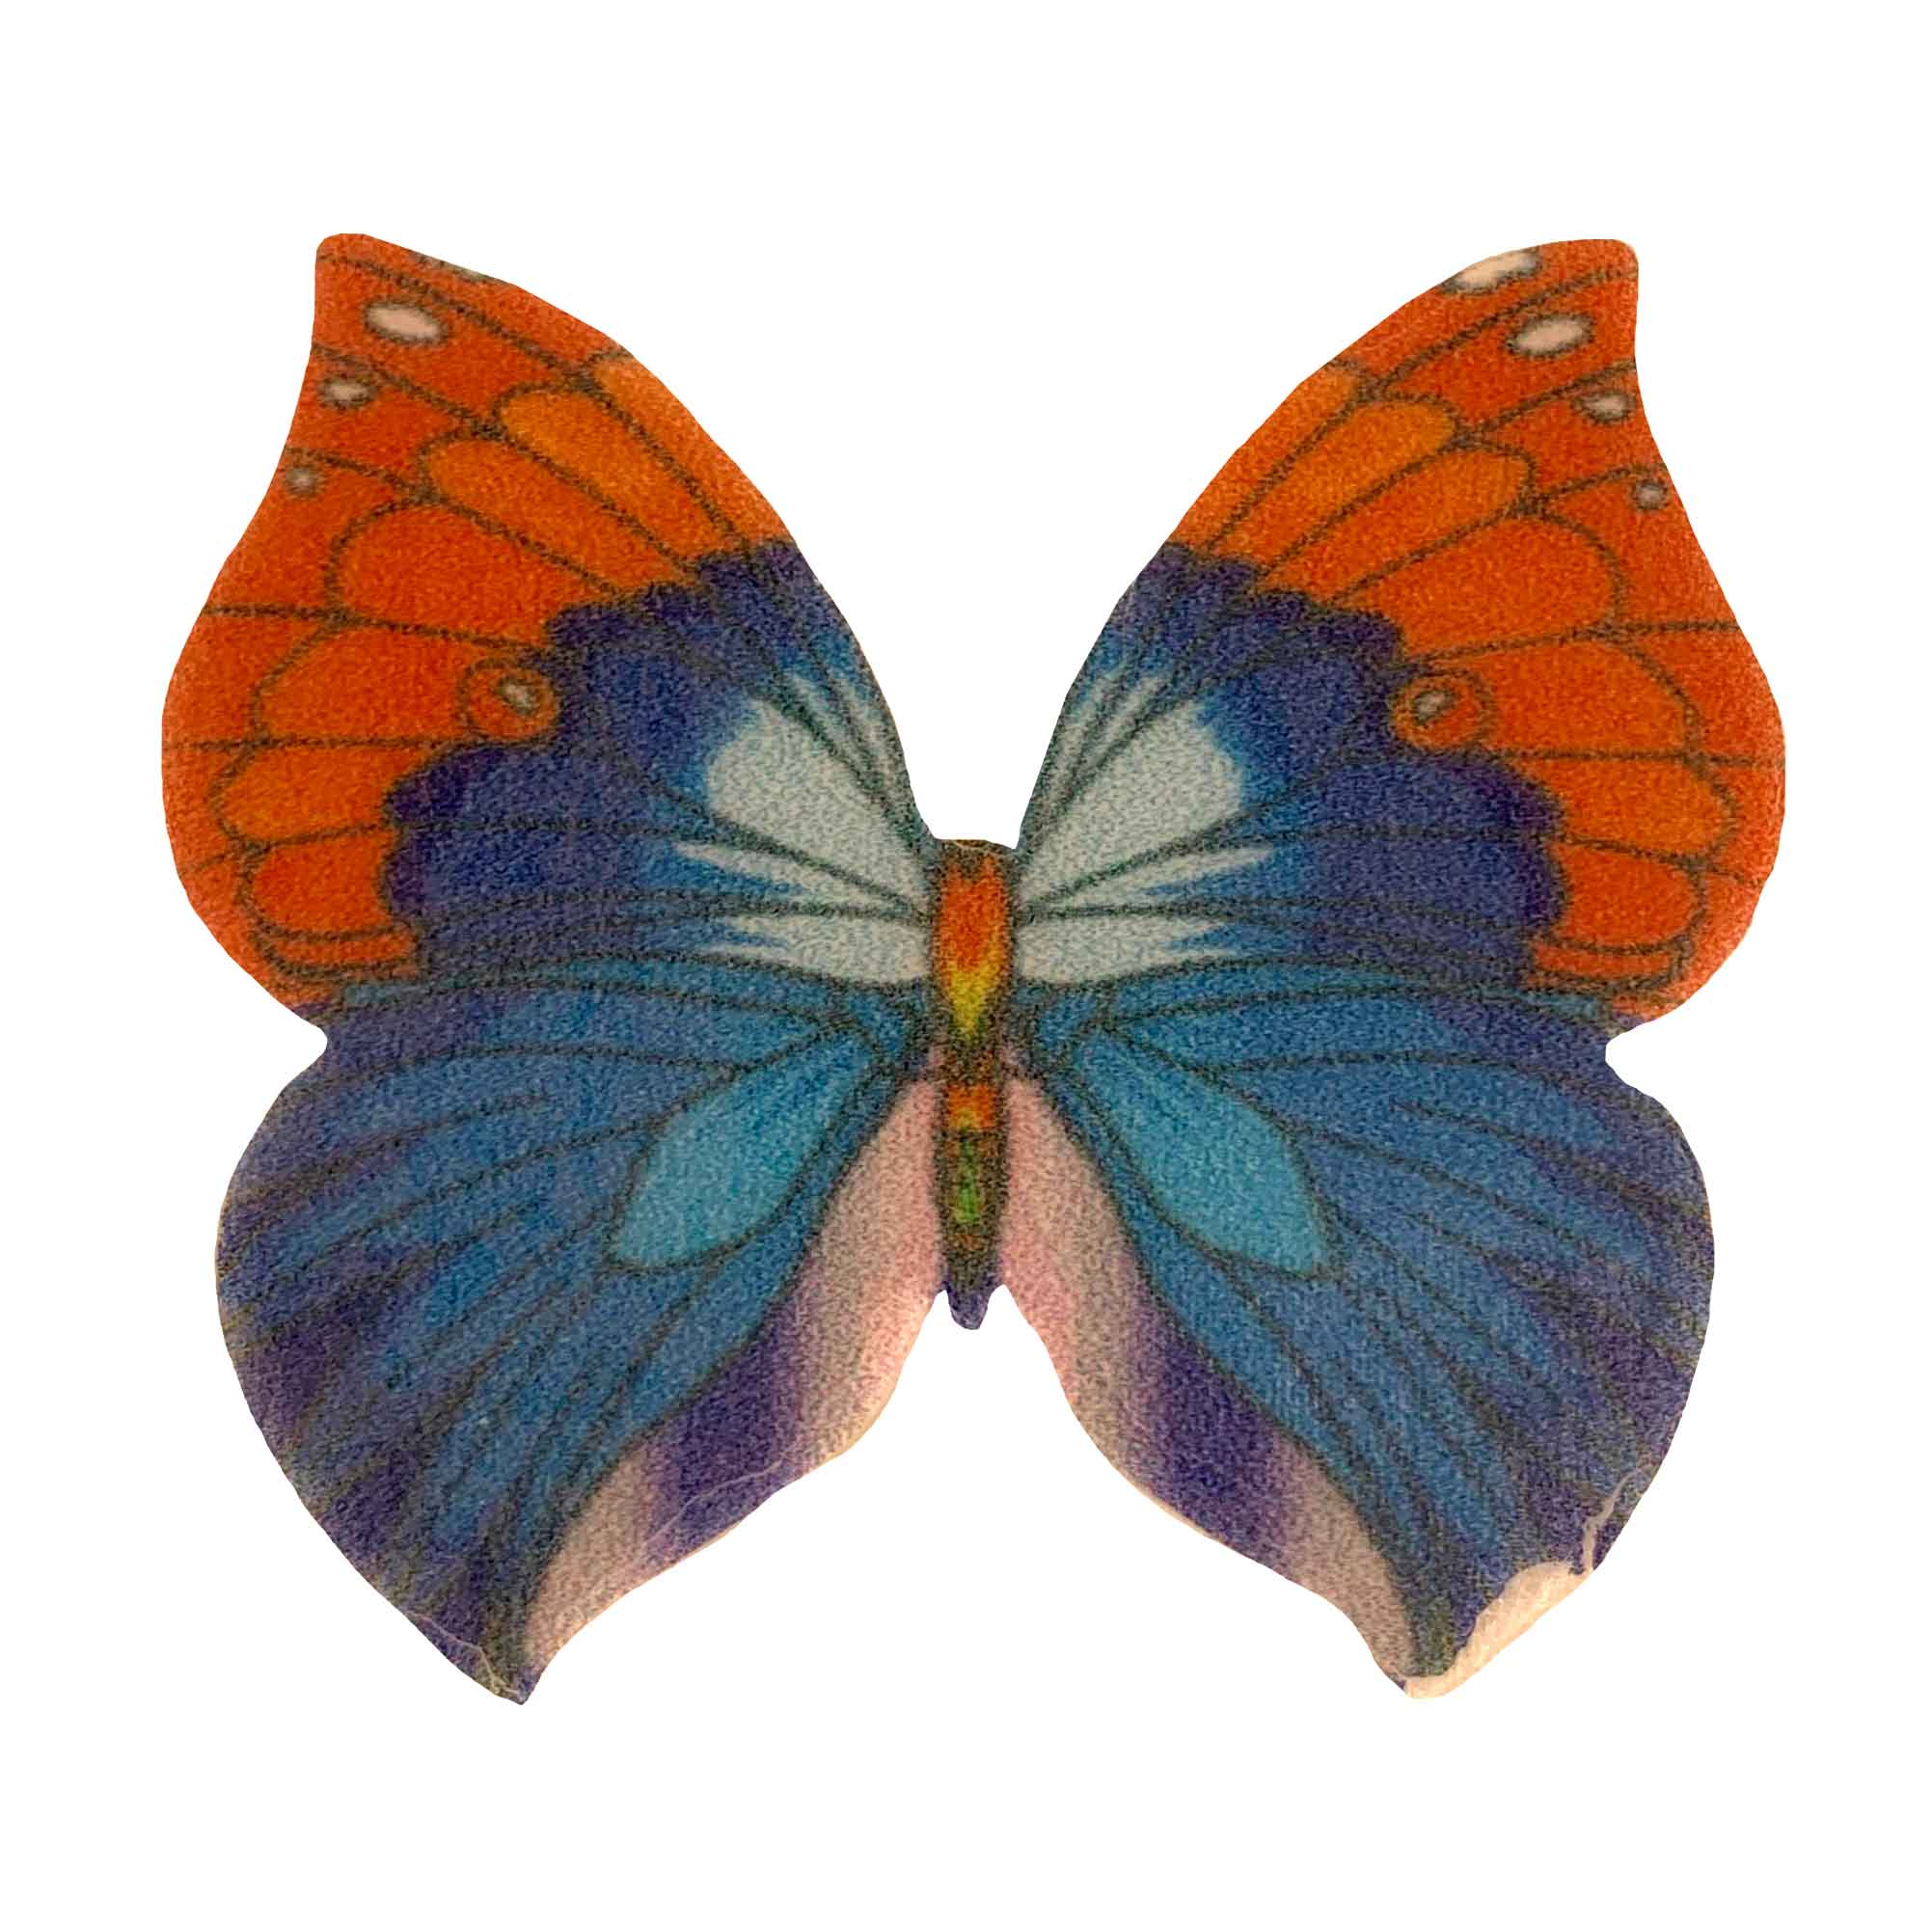 Вафельные бабочки цветные двухсторонние, 180 шт, микс tp59943. Вафельные бабочки. Вафельная картинка бабочки. Вафельные бабочки большие, 39 шт. Купить вафельных бабочек